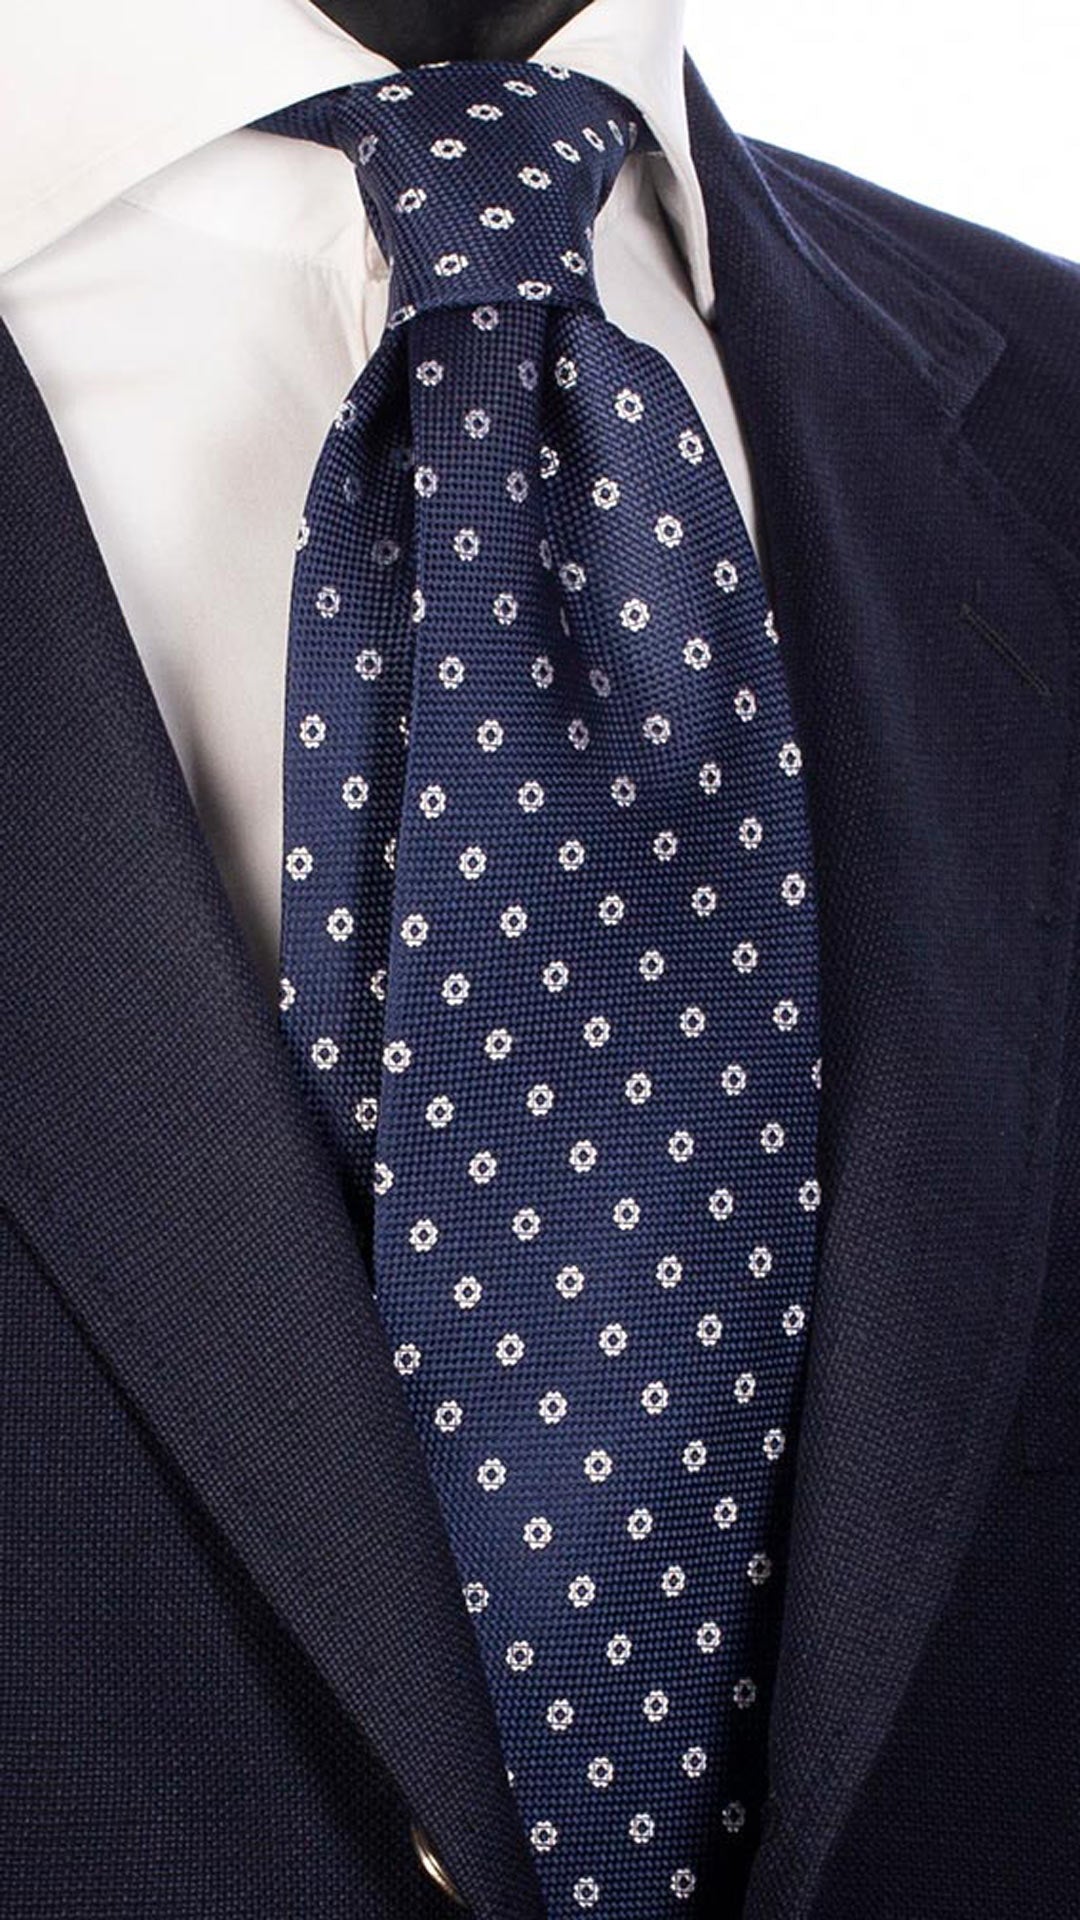 Cravatta da Cerimonia di Seta Blu Fantasia Bianca CY4545 Made in Italy Graffeo Cravatte